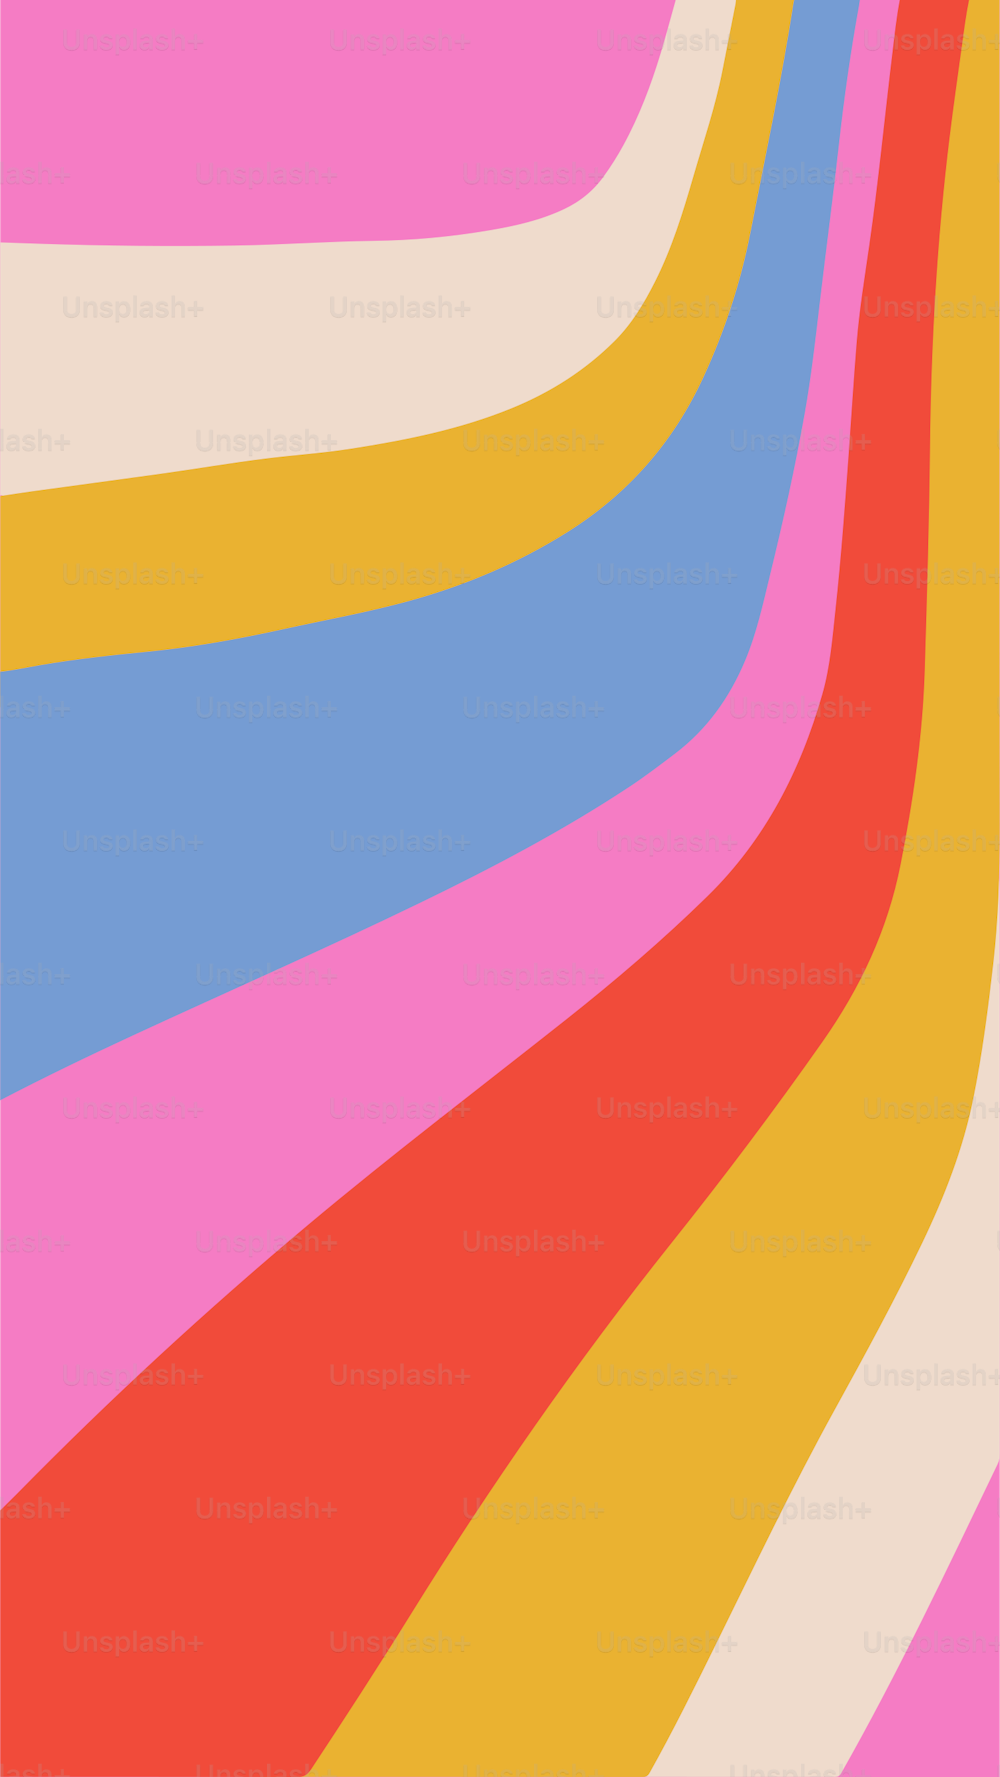 Fondo groovy retro style rainbow wave stripes. Ilustración vertical simple vectorial para redes sociales en tamaño de pantalla de teléfono.